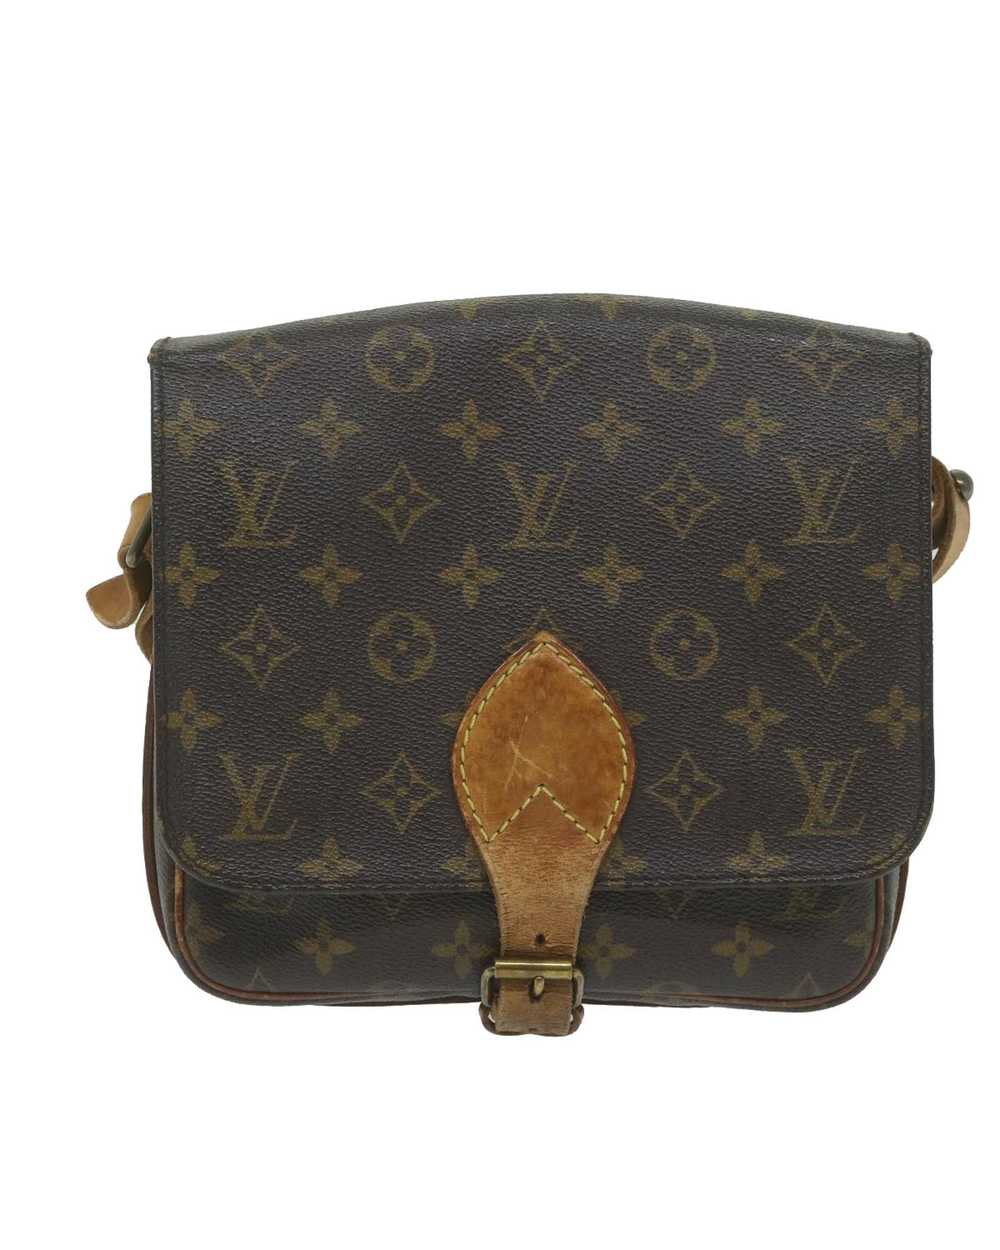 Louis Vuitton Iconic Monogram Canvas Shoulder Bag - image 2